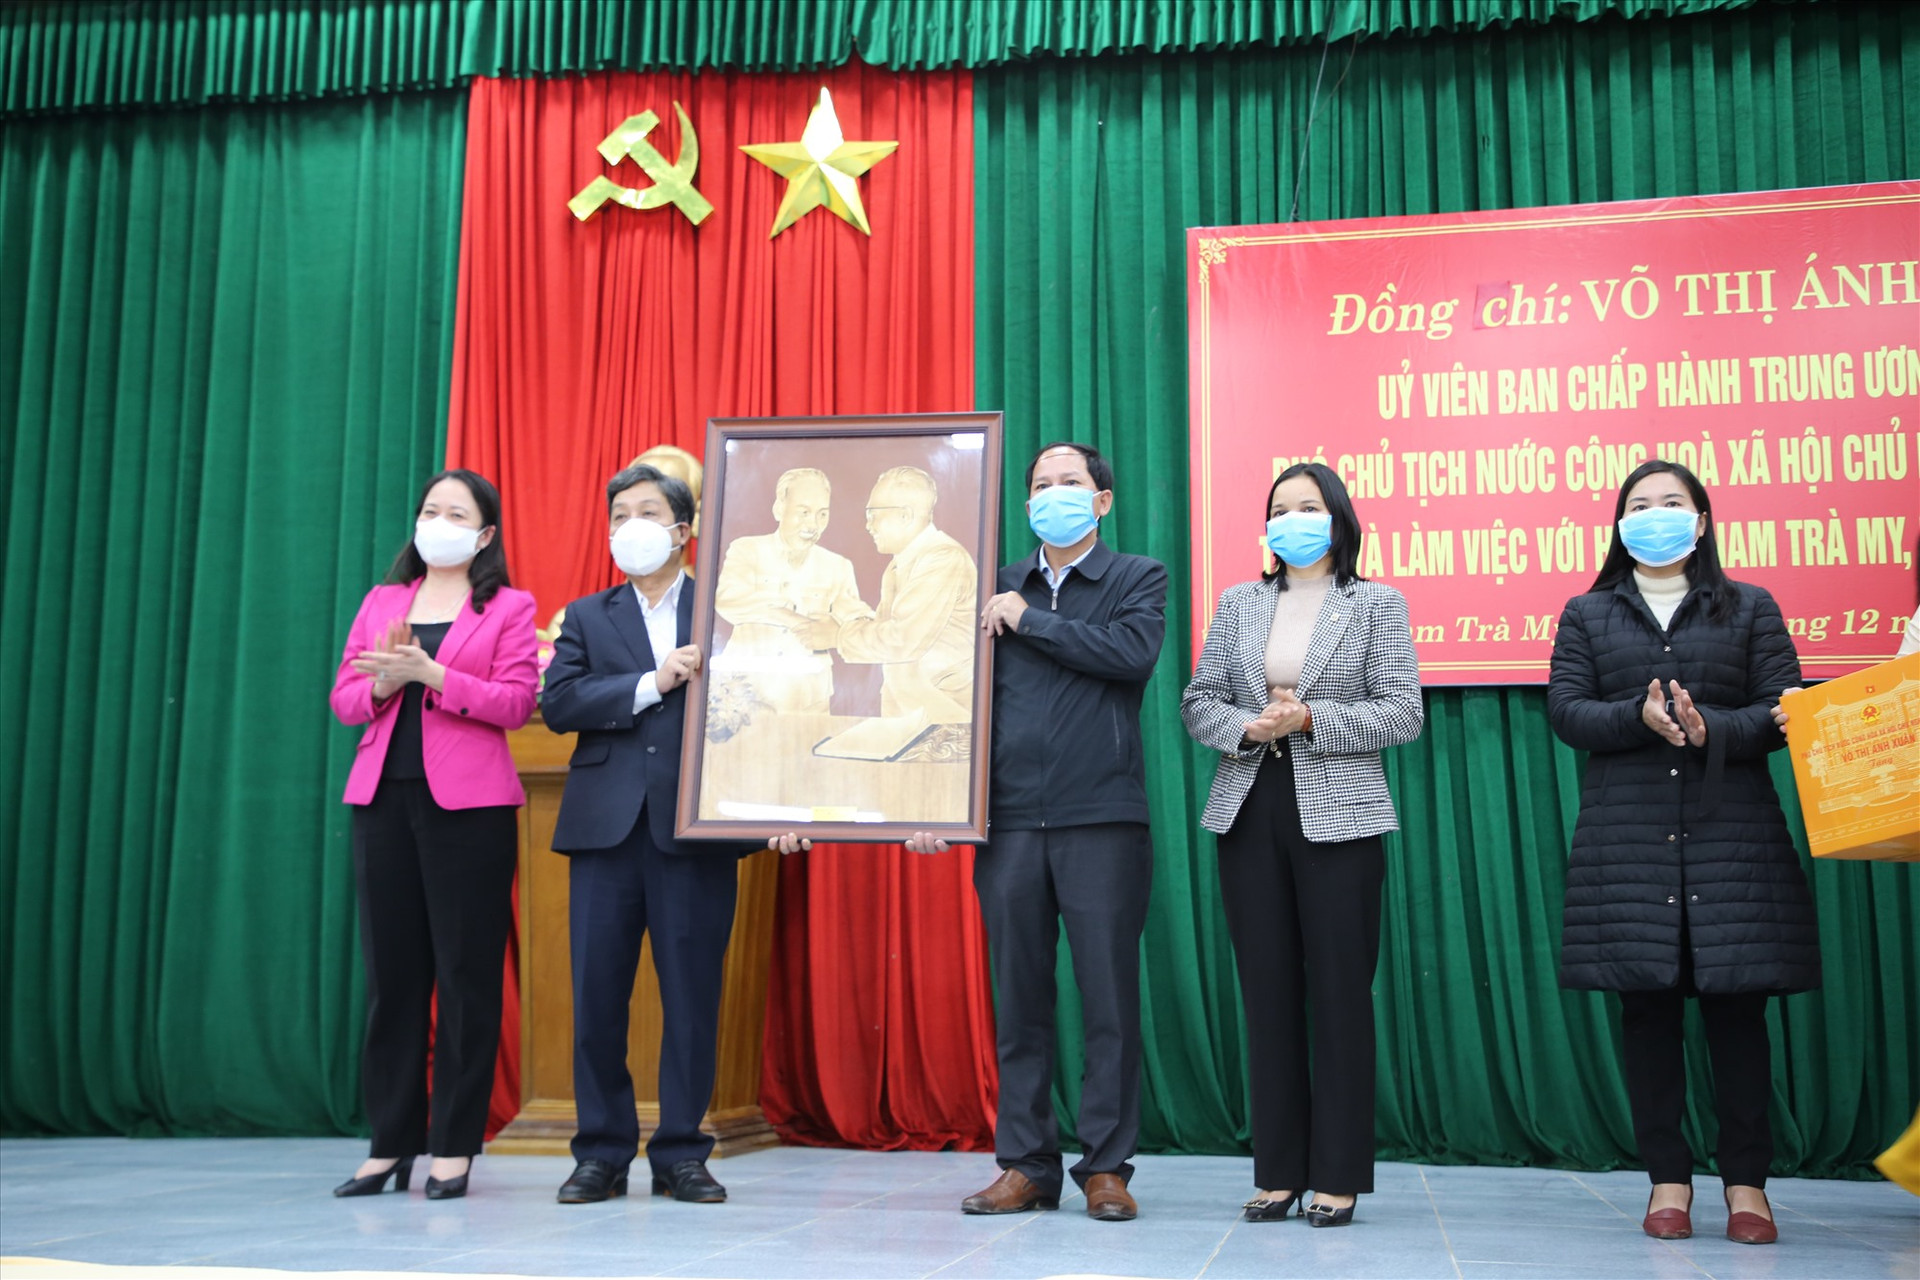 Phó Chủ tịch nước trao bức ảnh Chủ tịch Hồ Chí Minh cho huyện Nam Trà My. Ảnh: A.N